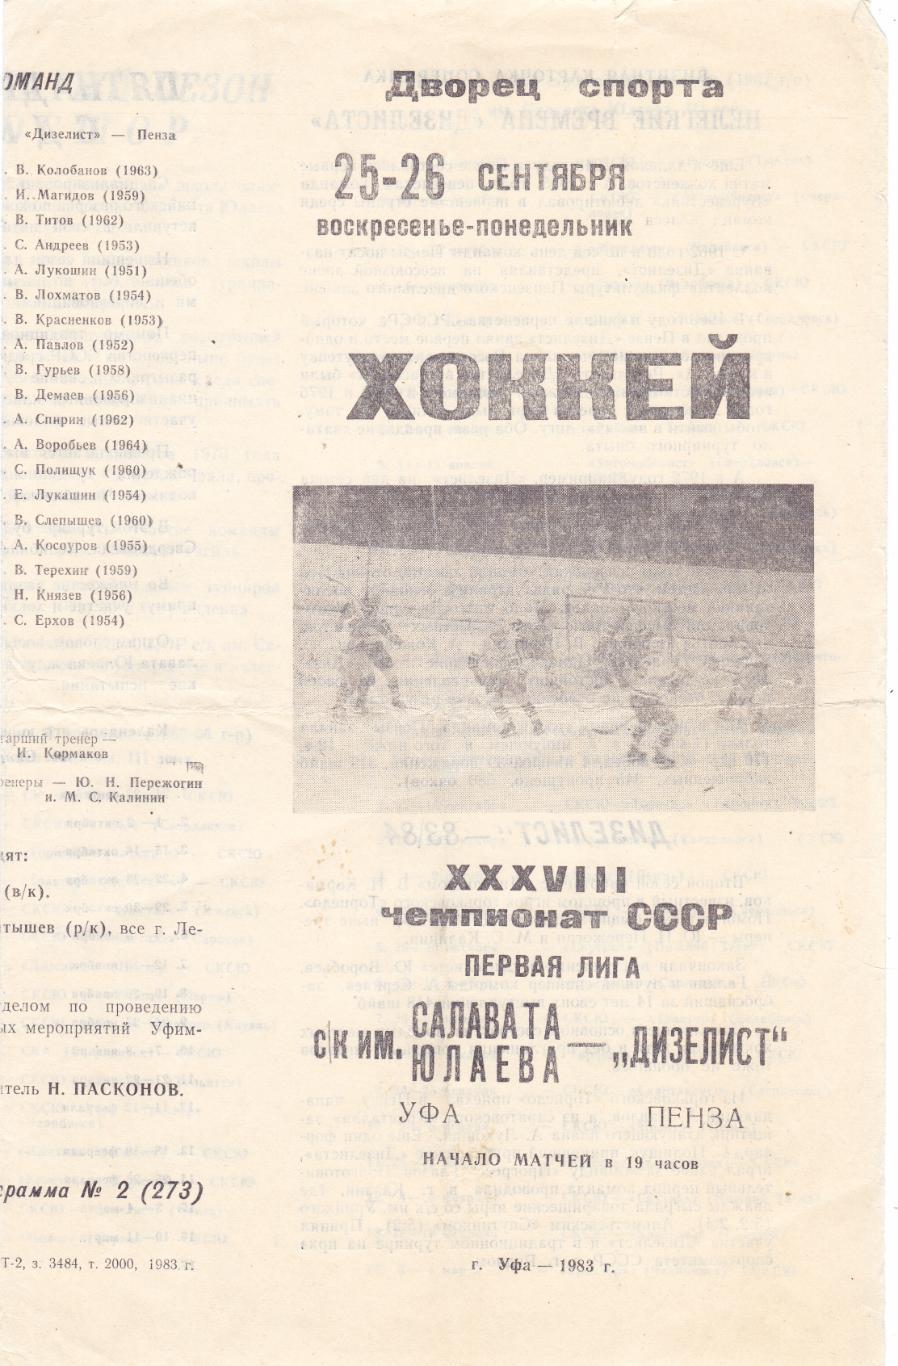 Салават Юлаев (Уфа) - Дизелист (Пенза) 25-26.09.1983